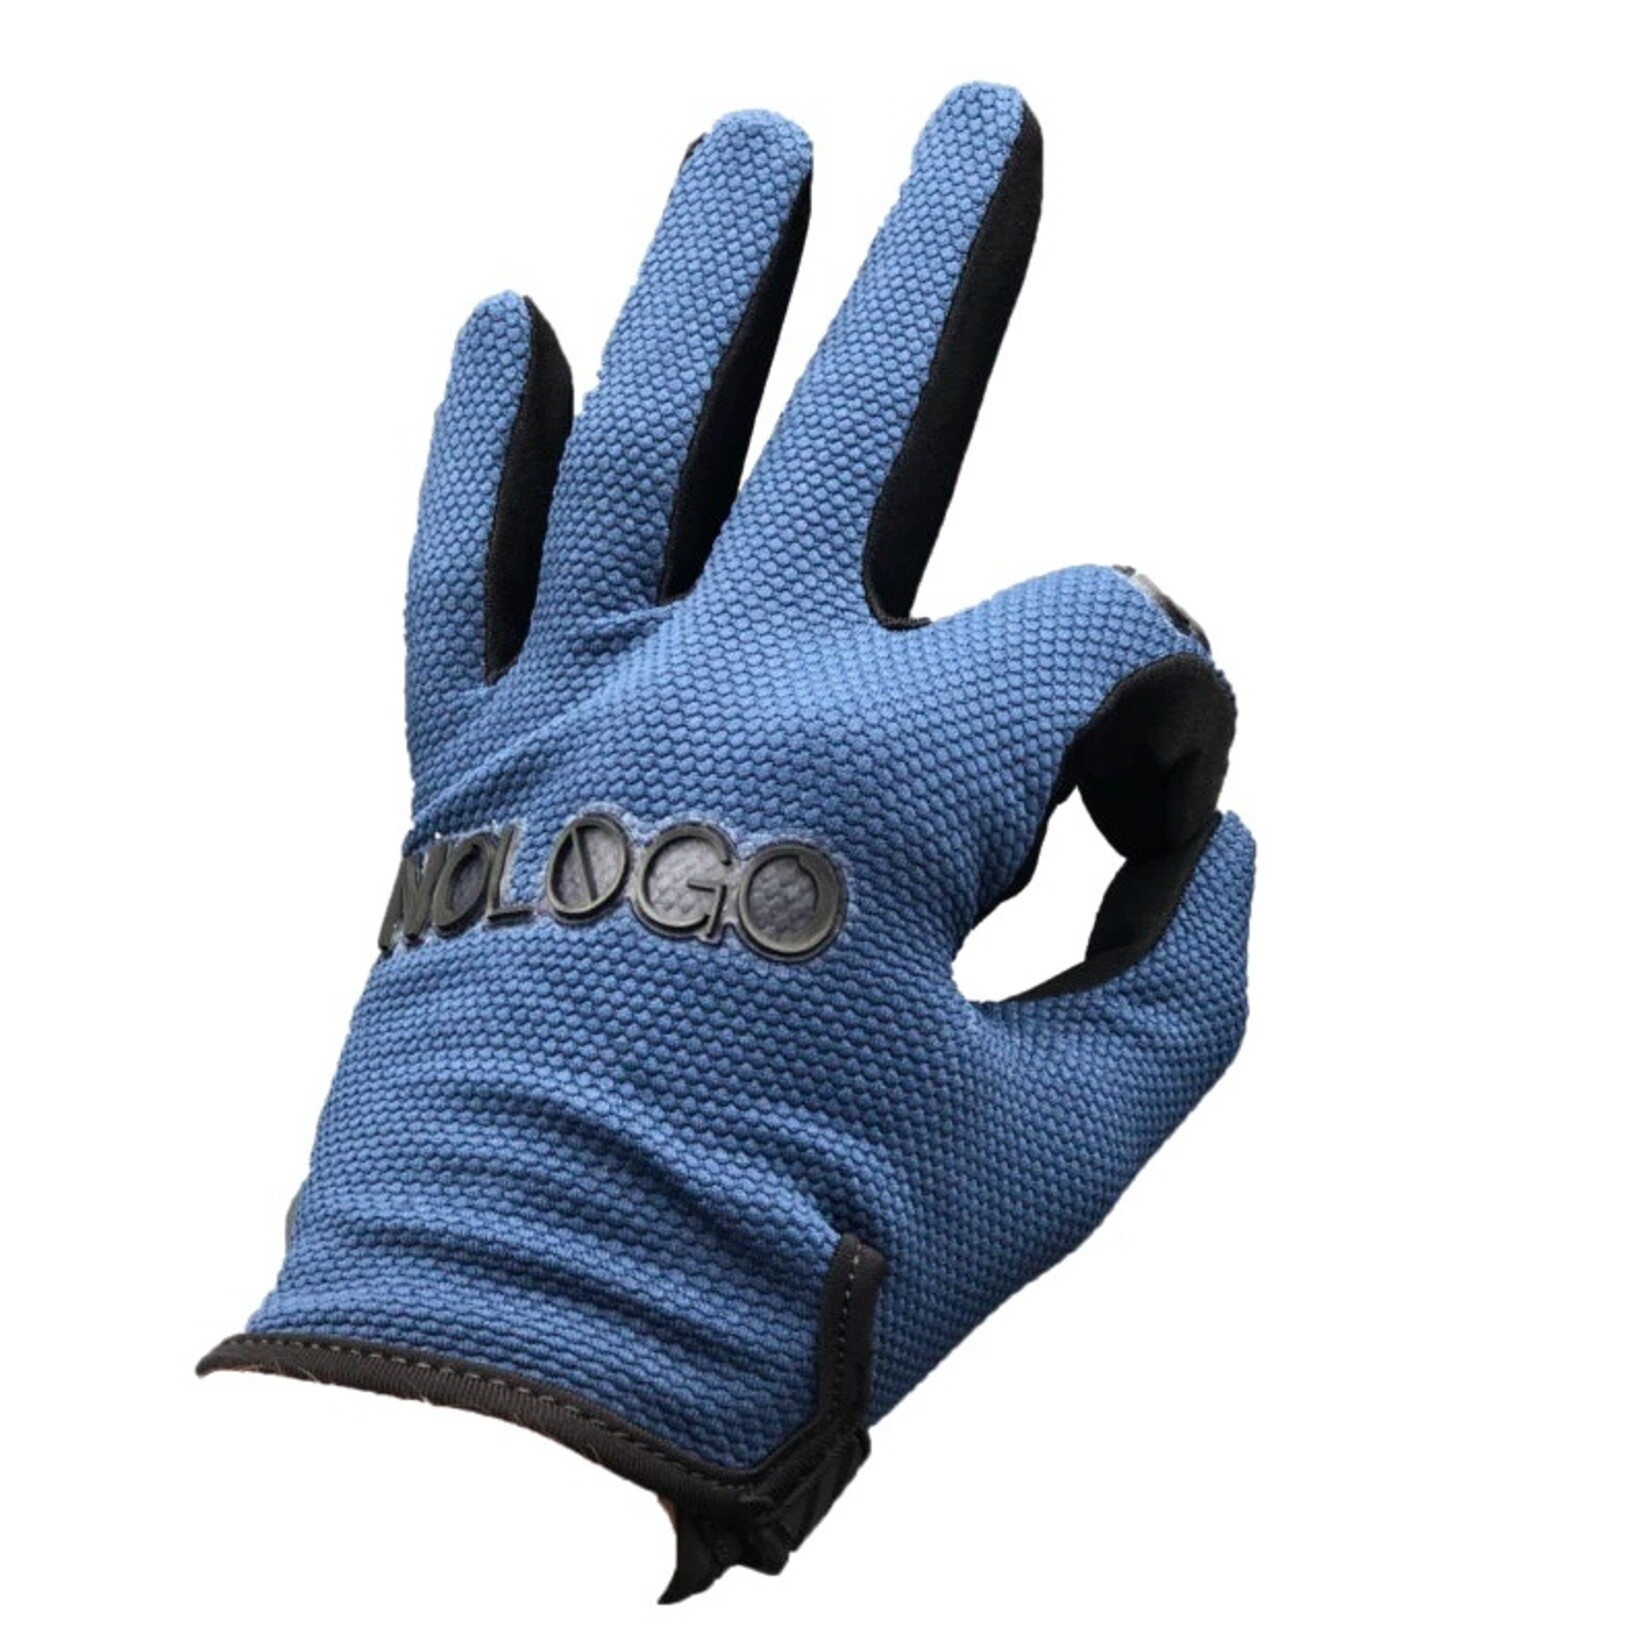 Nologo Nologo Gloves